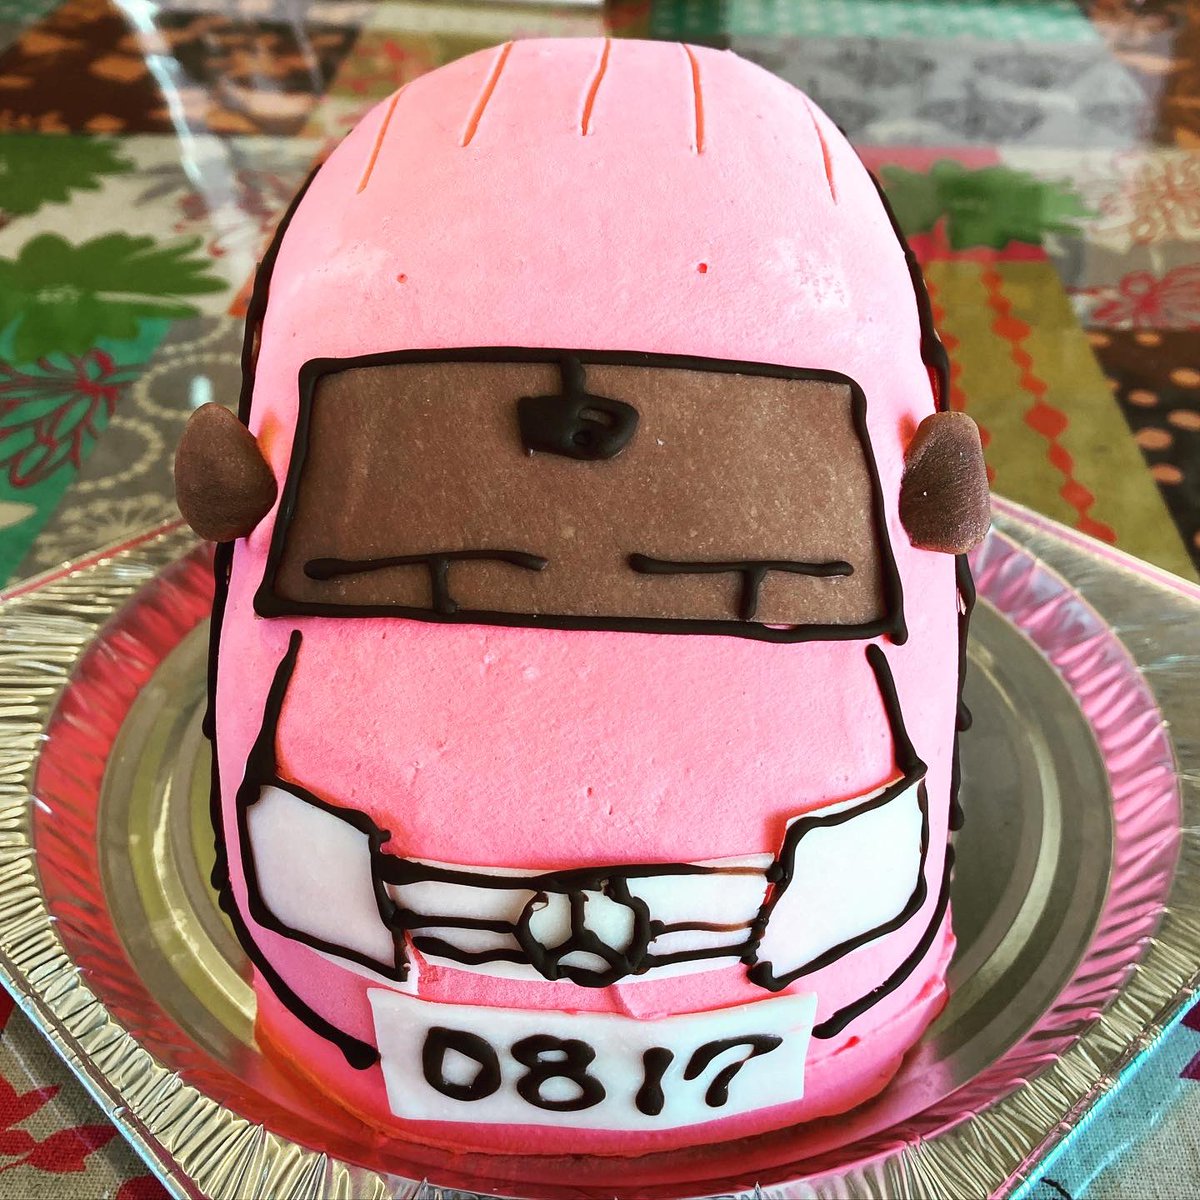 スイーツショップボストン 郵便配達車のケーキです 郵便車 働く車 バースデーケーキ 3dケーキ